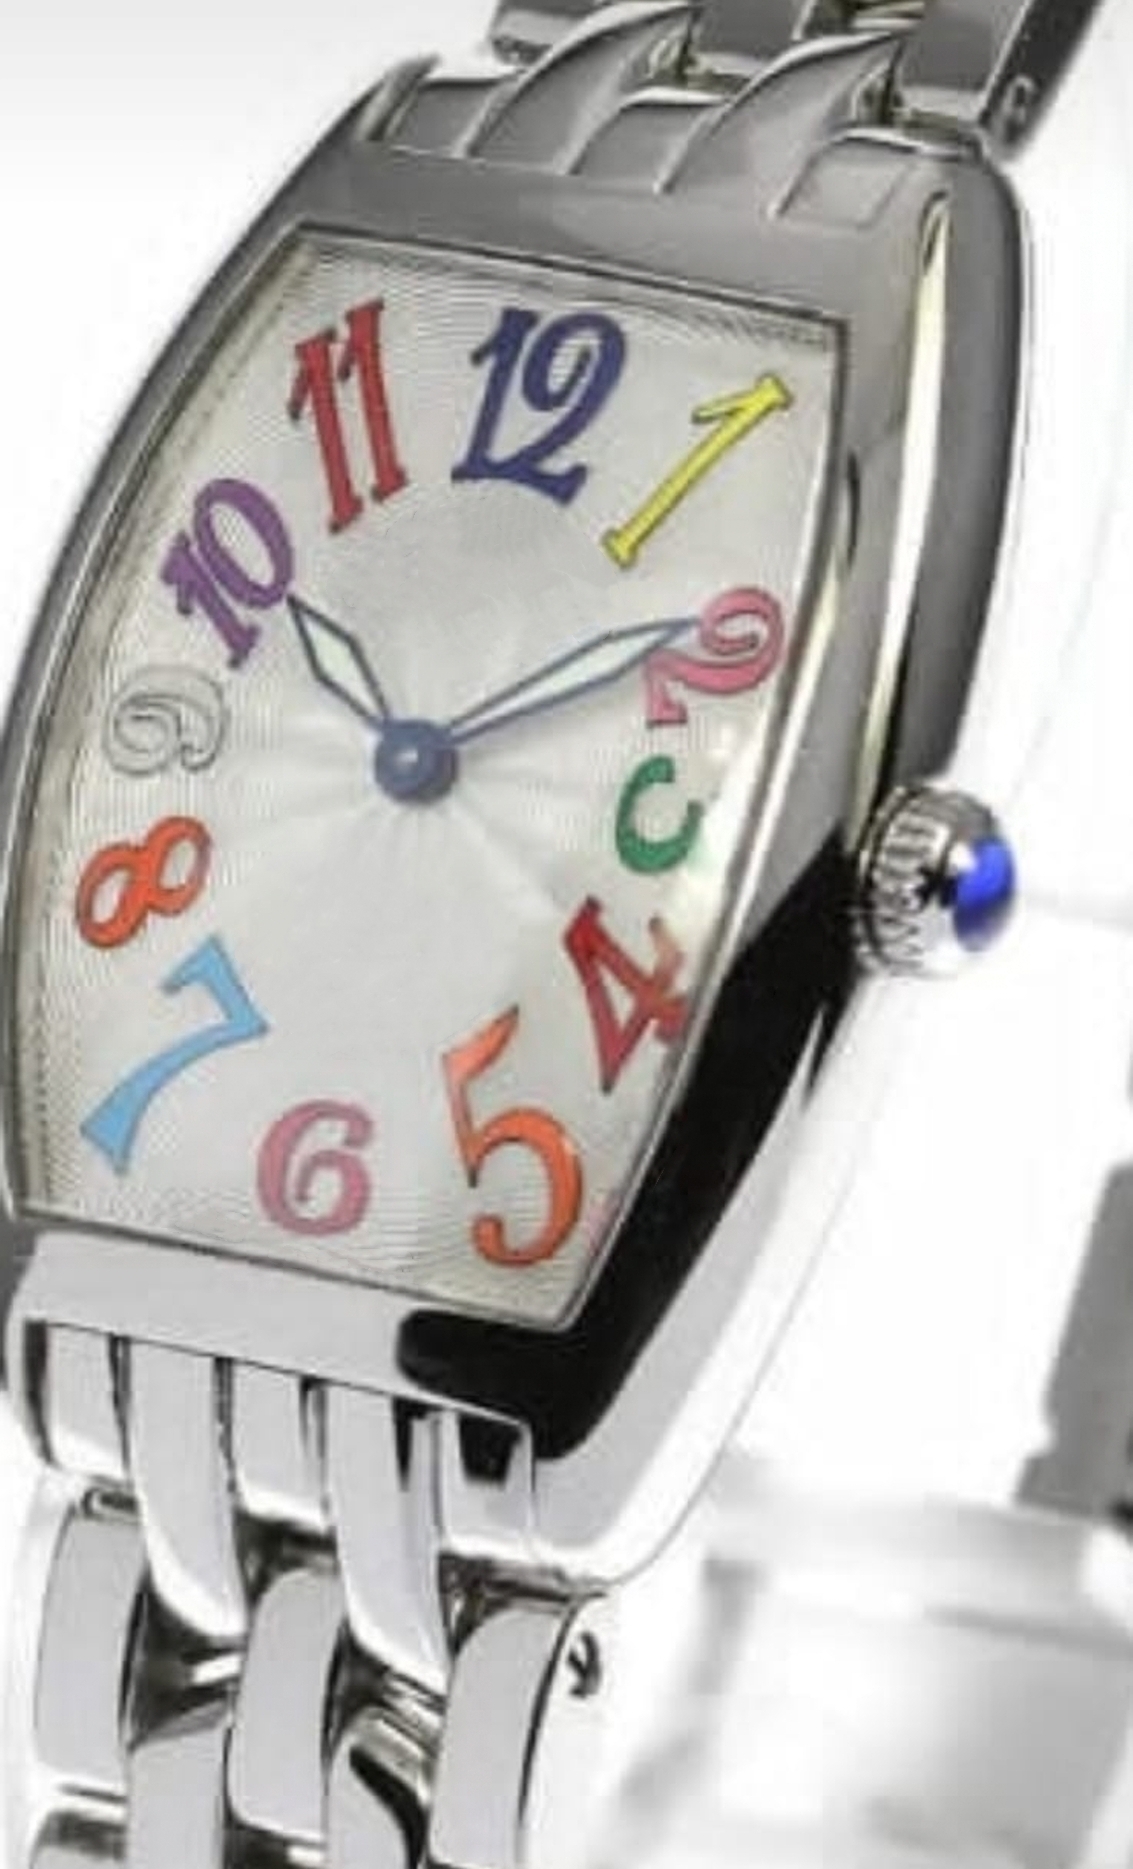 Şık kadın kuvars saat 28mm gümüş paslanmaz çelik kasa elektronik hareket zarif klasik şarap fıçı tipi tasarımcı saat